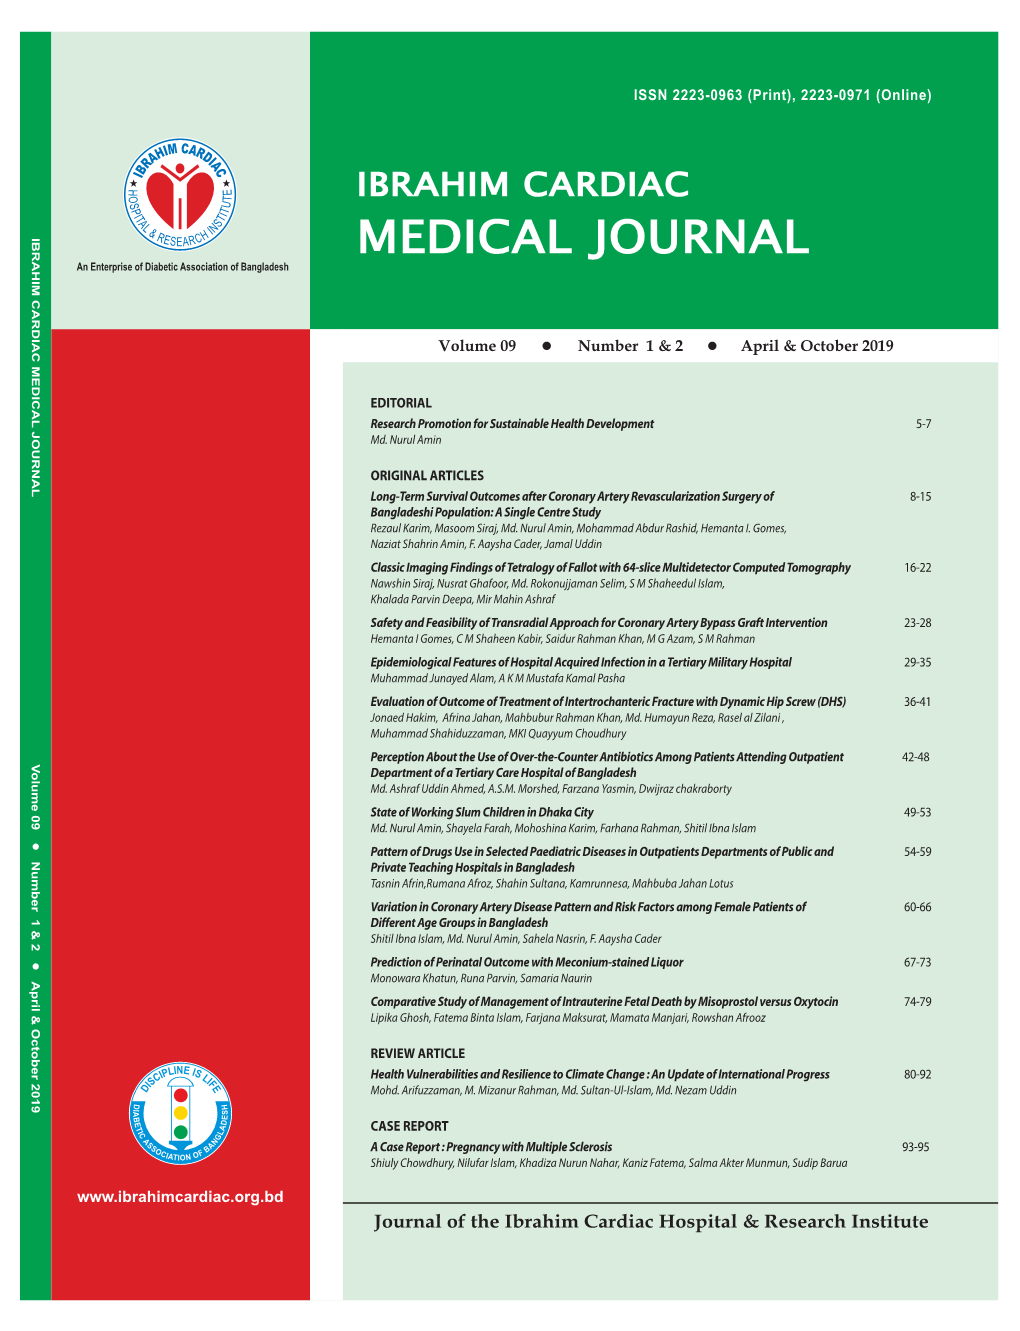 IBRAHIM CARDIAC MEDICAL JOURNAL (Vol 09 | No 1 & 2 | April